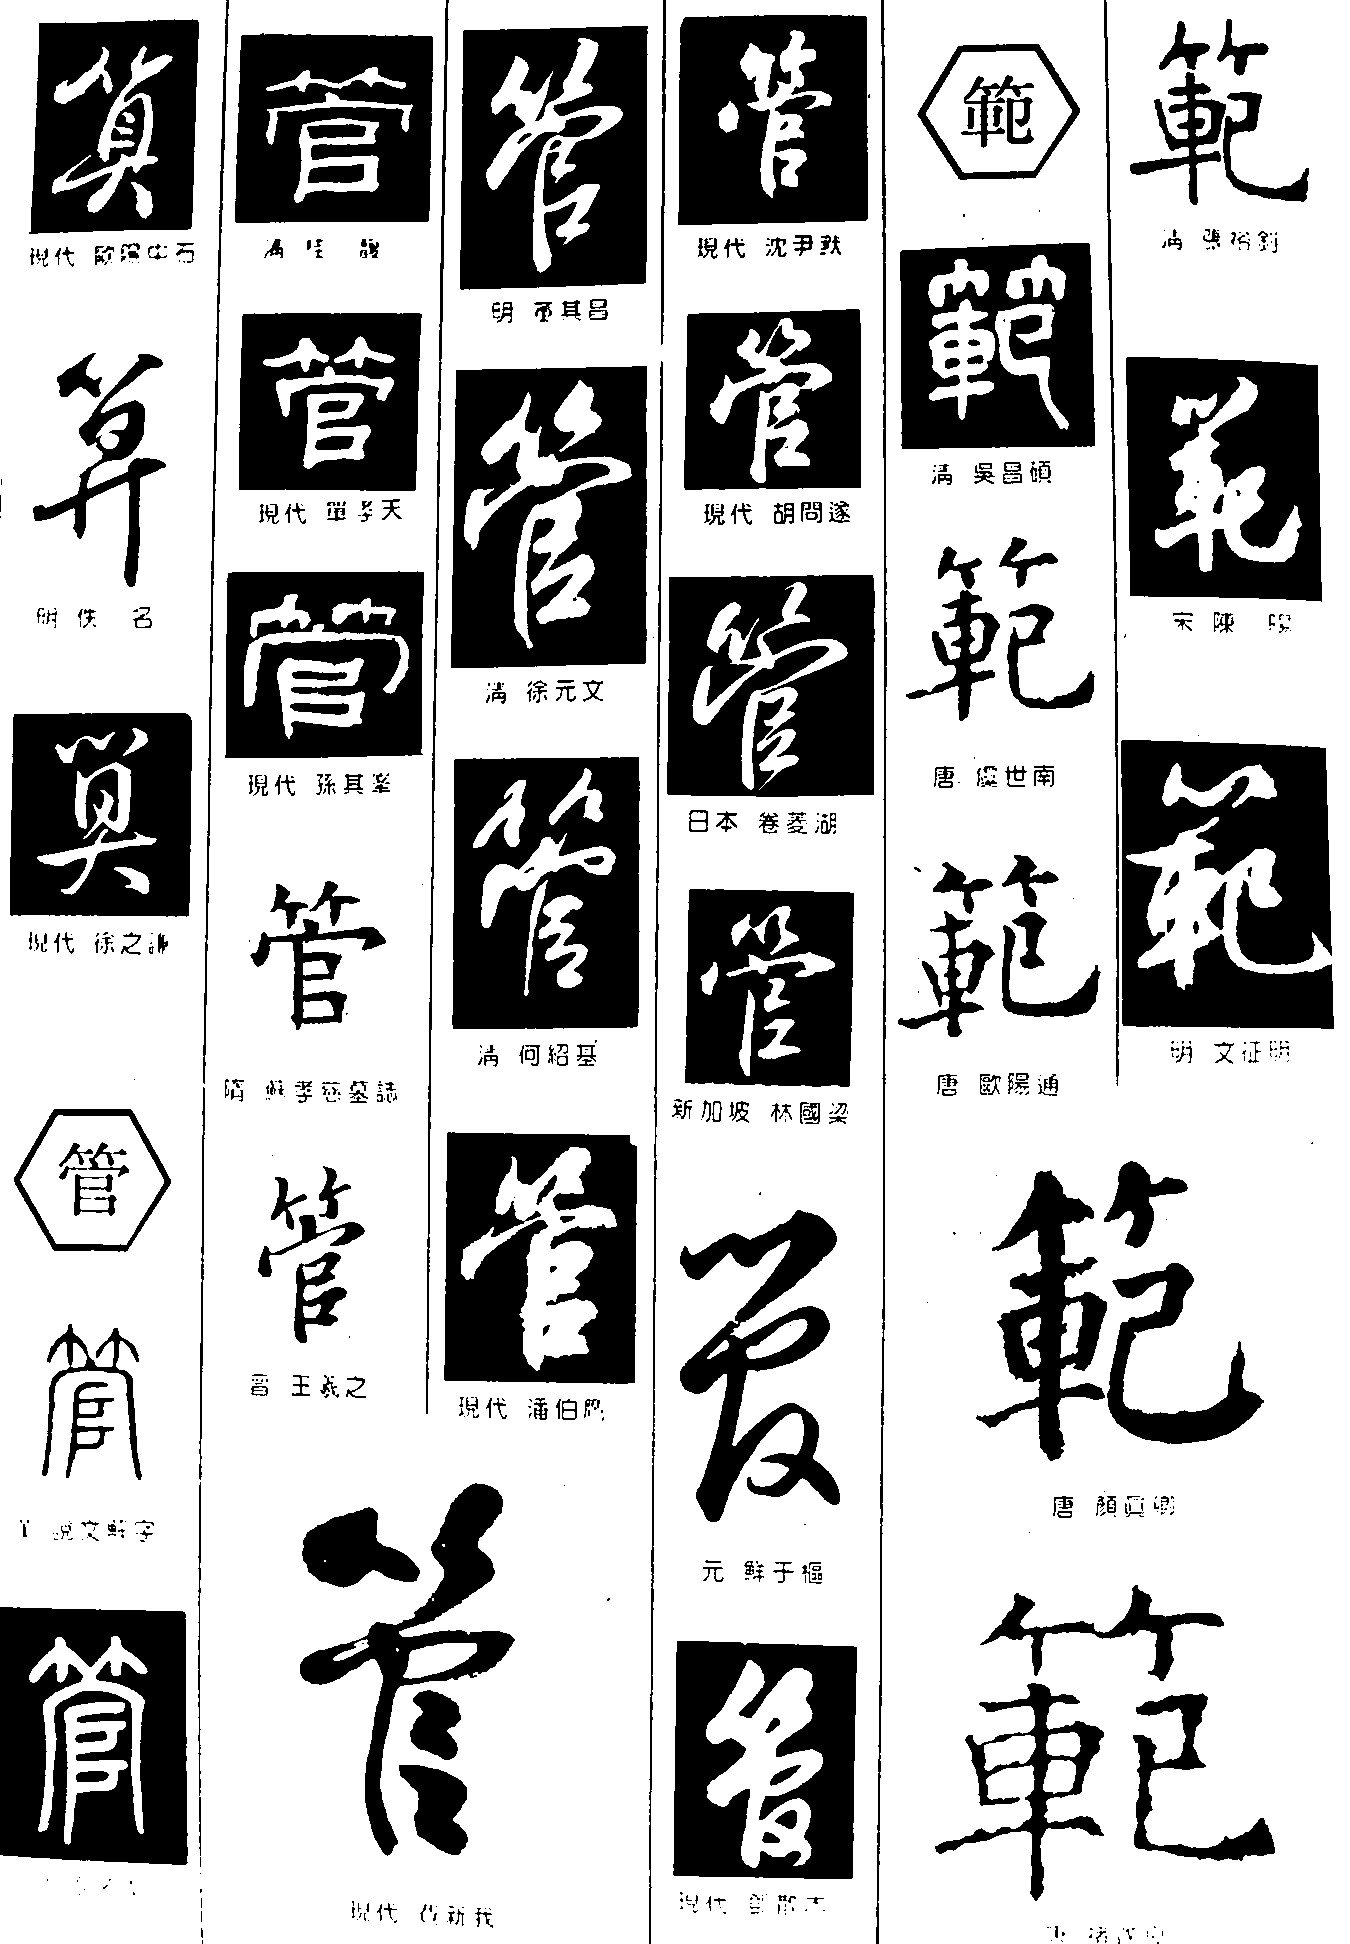 算管范_书法字体_字体设计作品-中国字体设计网_ziti.